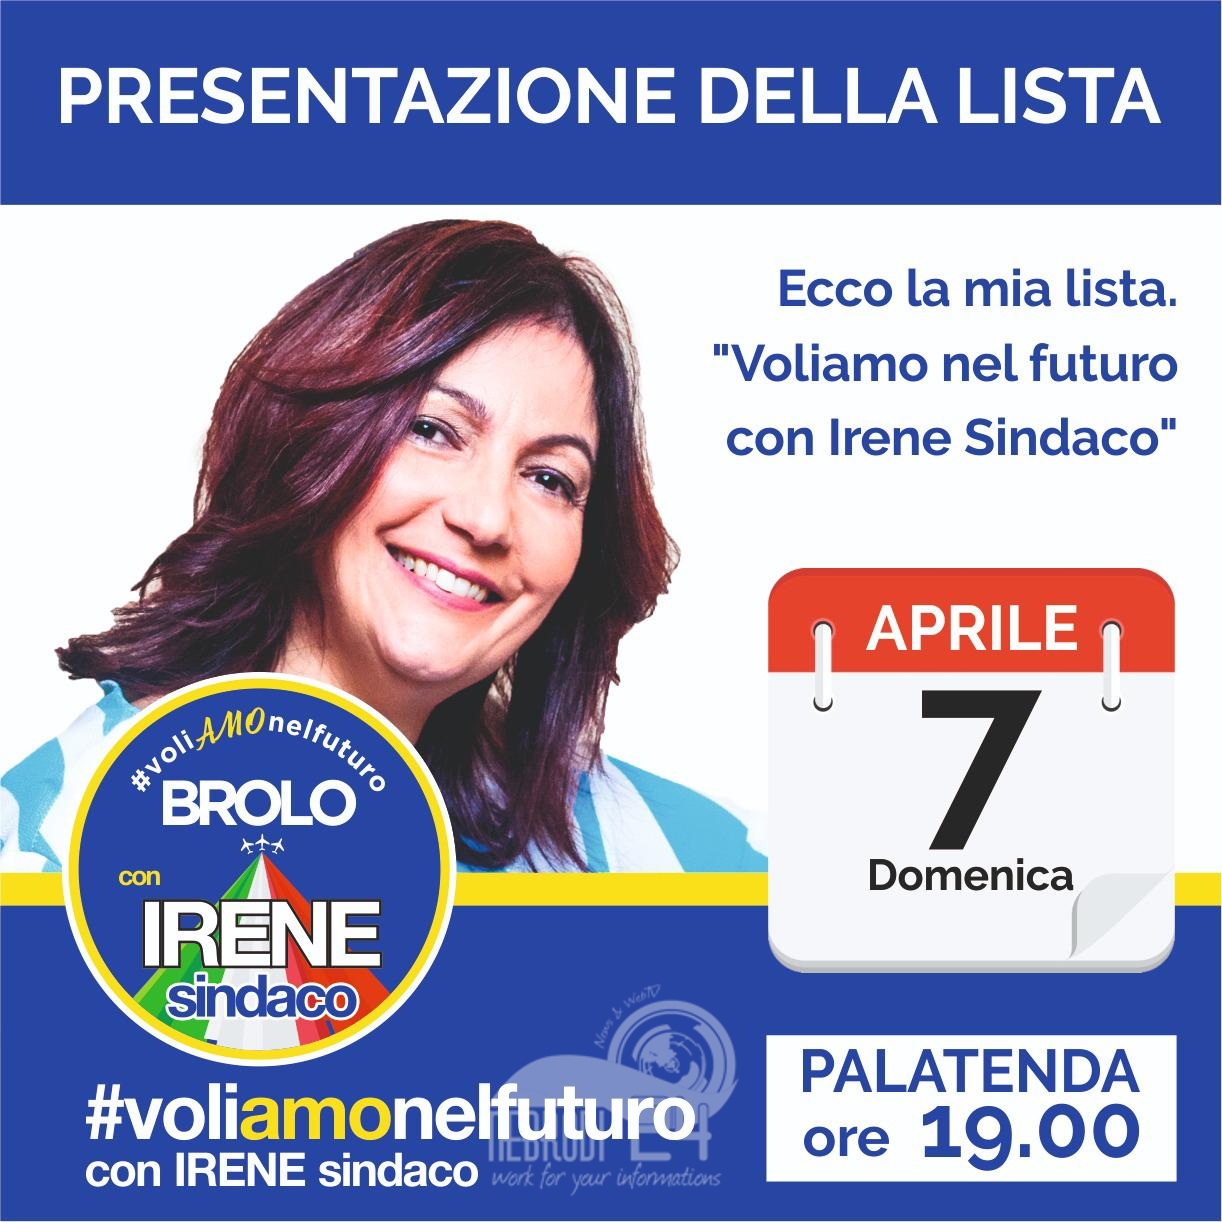 Brolo – Elezioni 2019: il candidato sindaco Irene Ricciardello domenica alle 19.00 presenta la lista